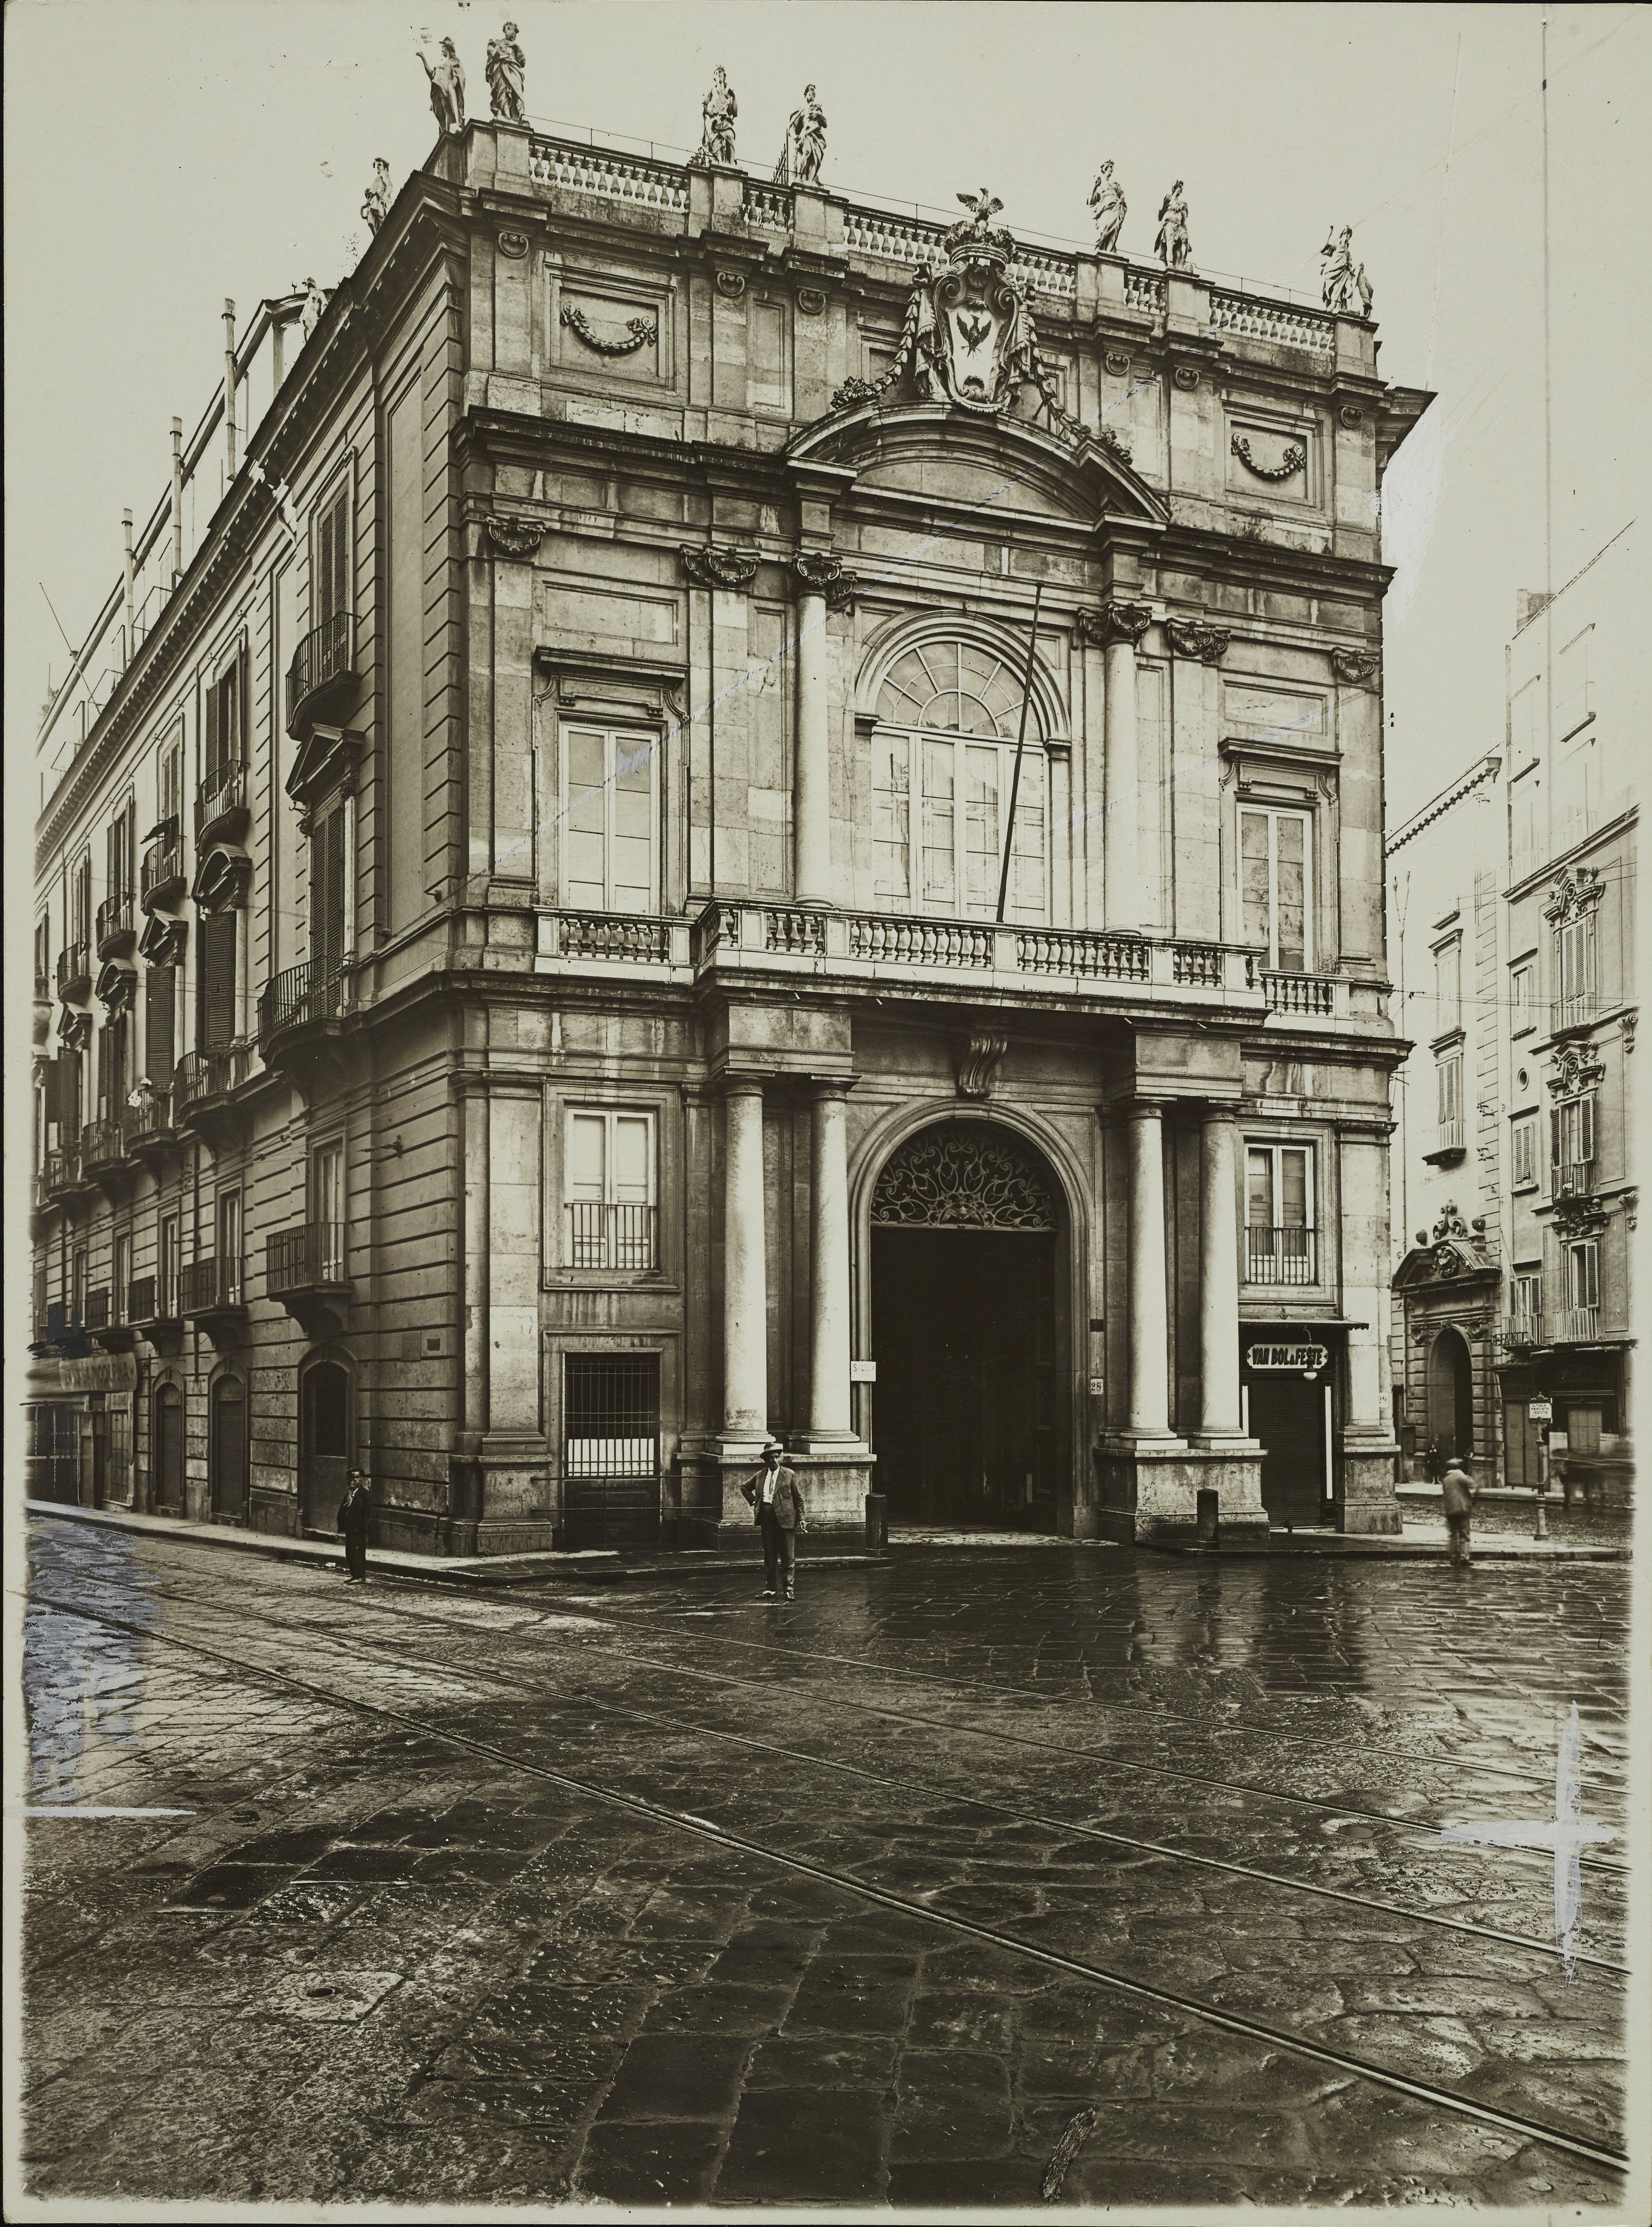 Fotografo non identificato, Napoli - Palazzo Doria D'Angri, facciata, 1926-1950, gelatina ai sali d'argento, MPI6071696